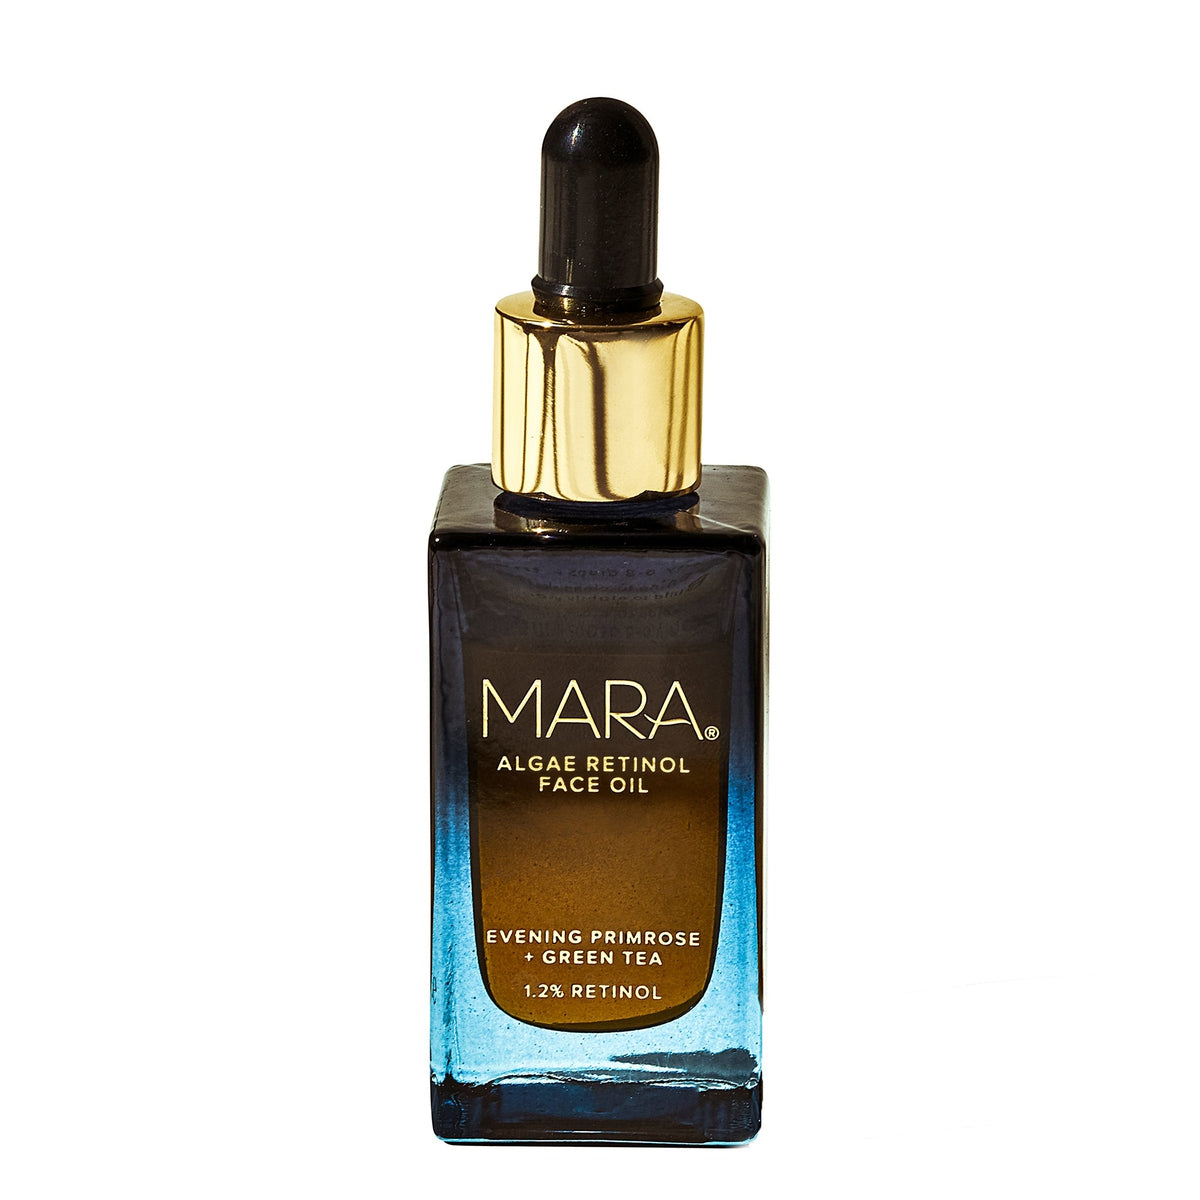 MARA | Evening Primrose + Green Tea Algae Retinol Face Oil